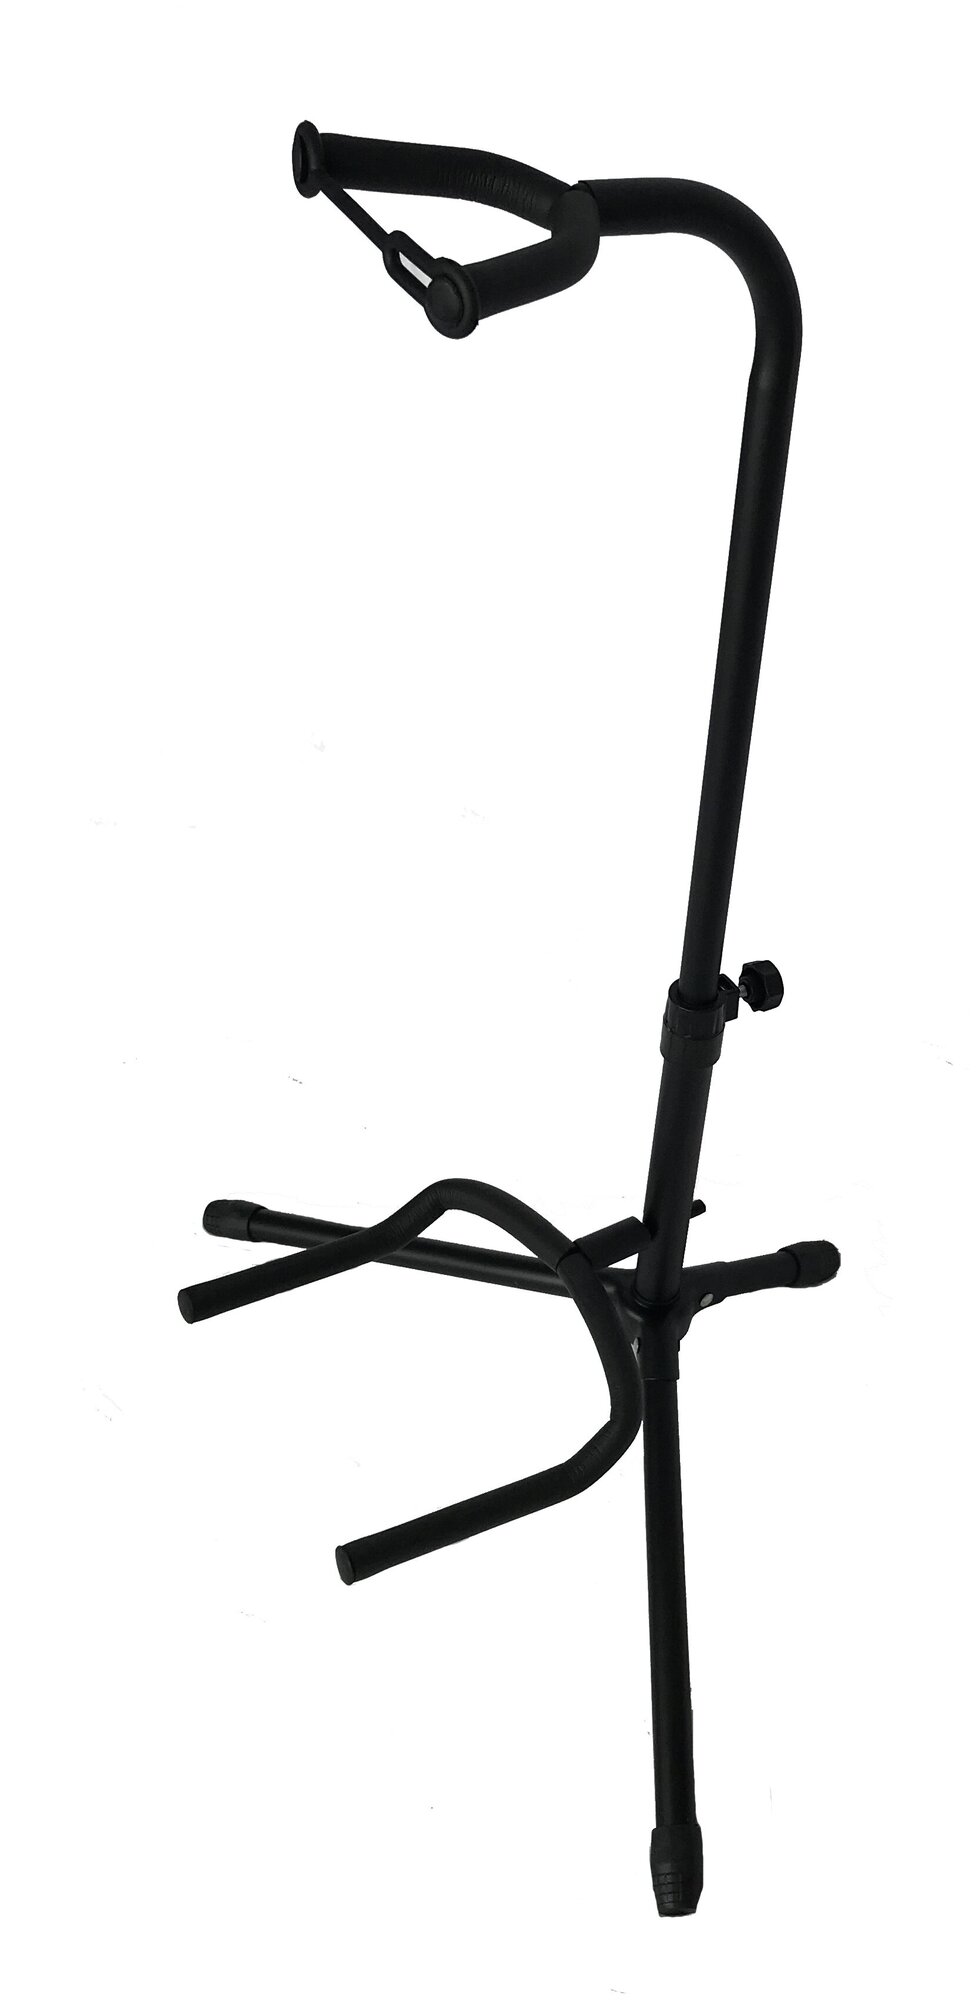 Гитарная напольная стойка Dekko JR-302 с держателем и фиксатором грифа, цвет: черный